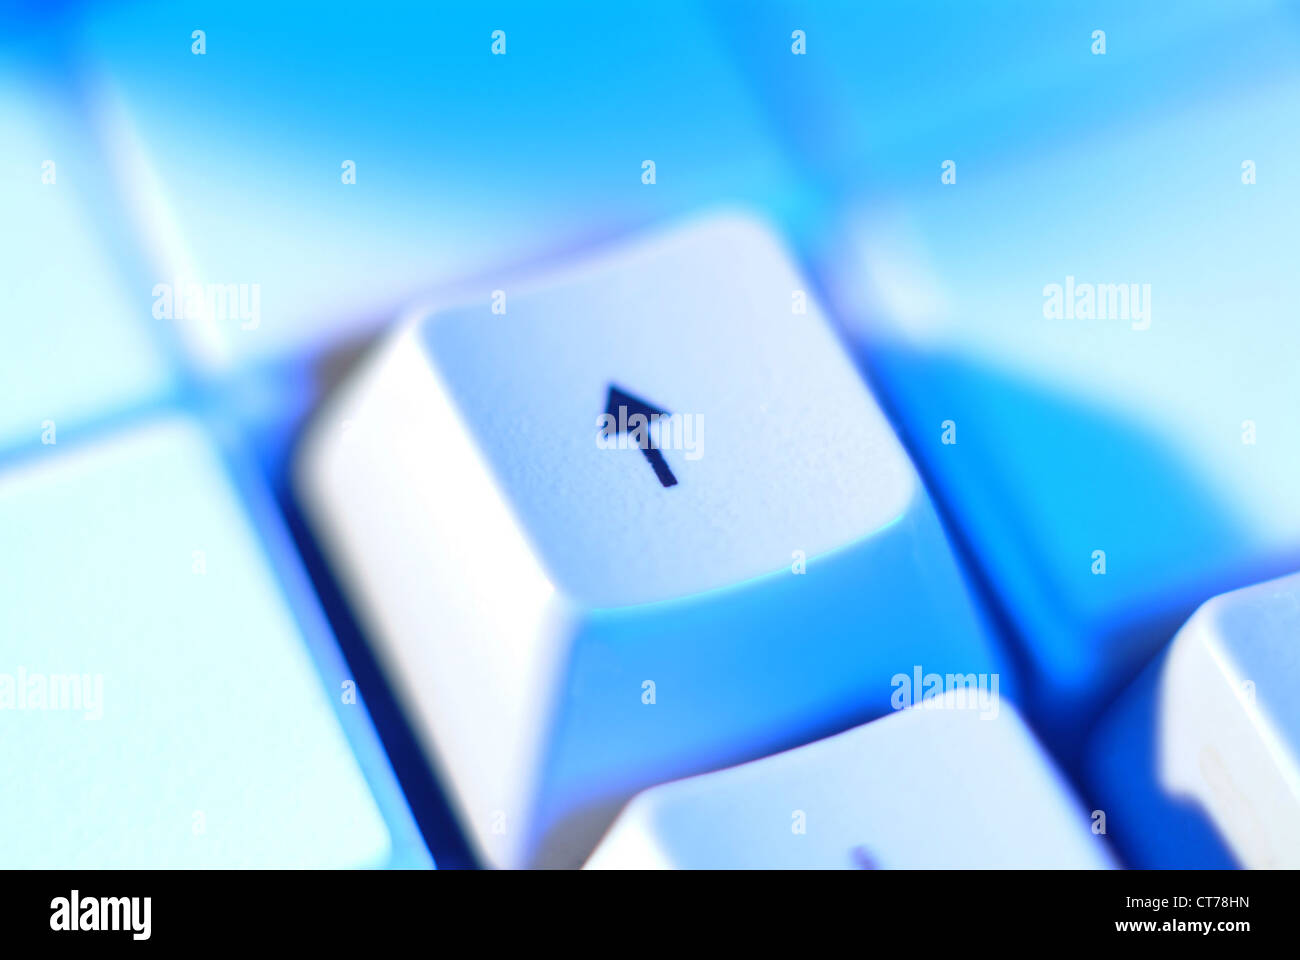 Pfeil-Taste auf der Tastatur Stockfotografie - Alamy